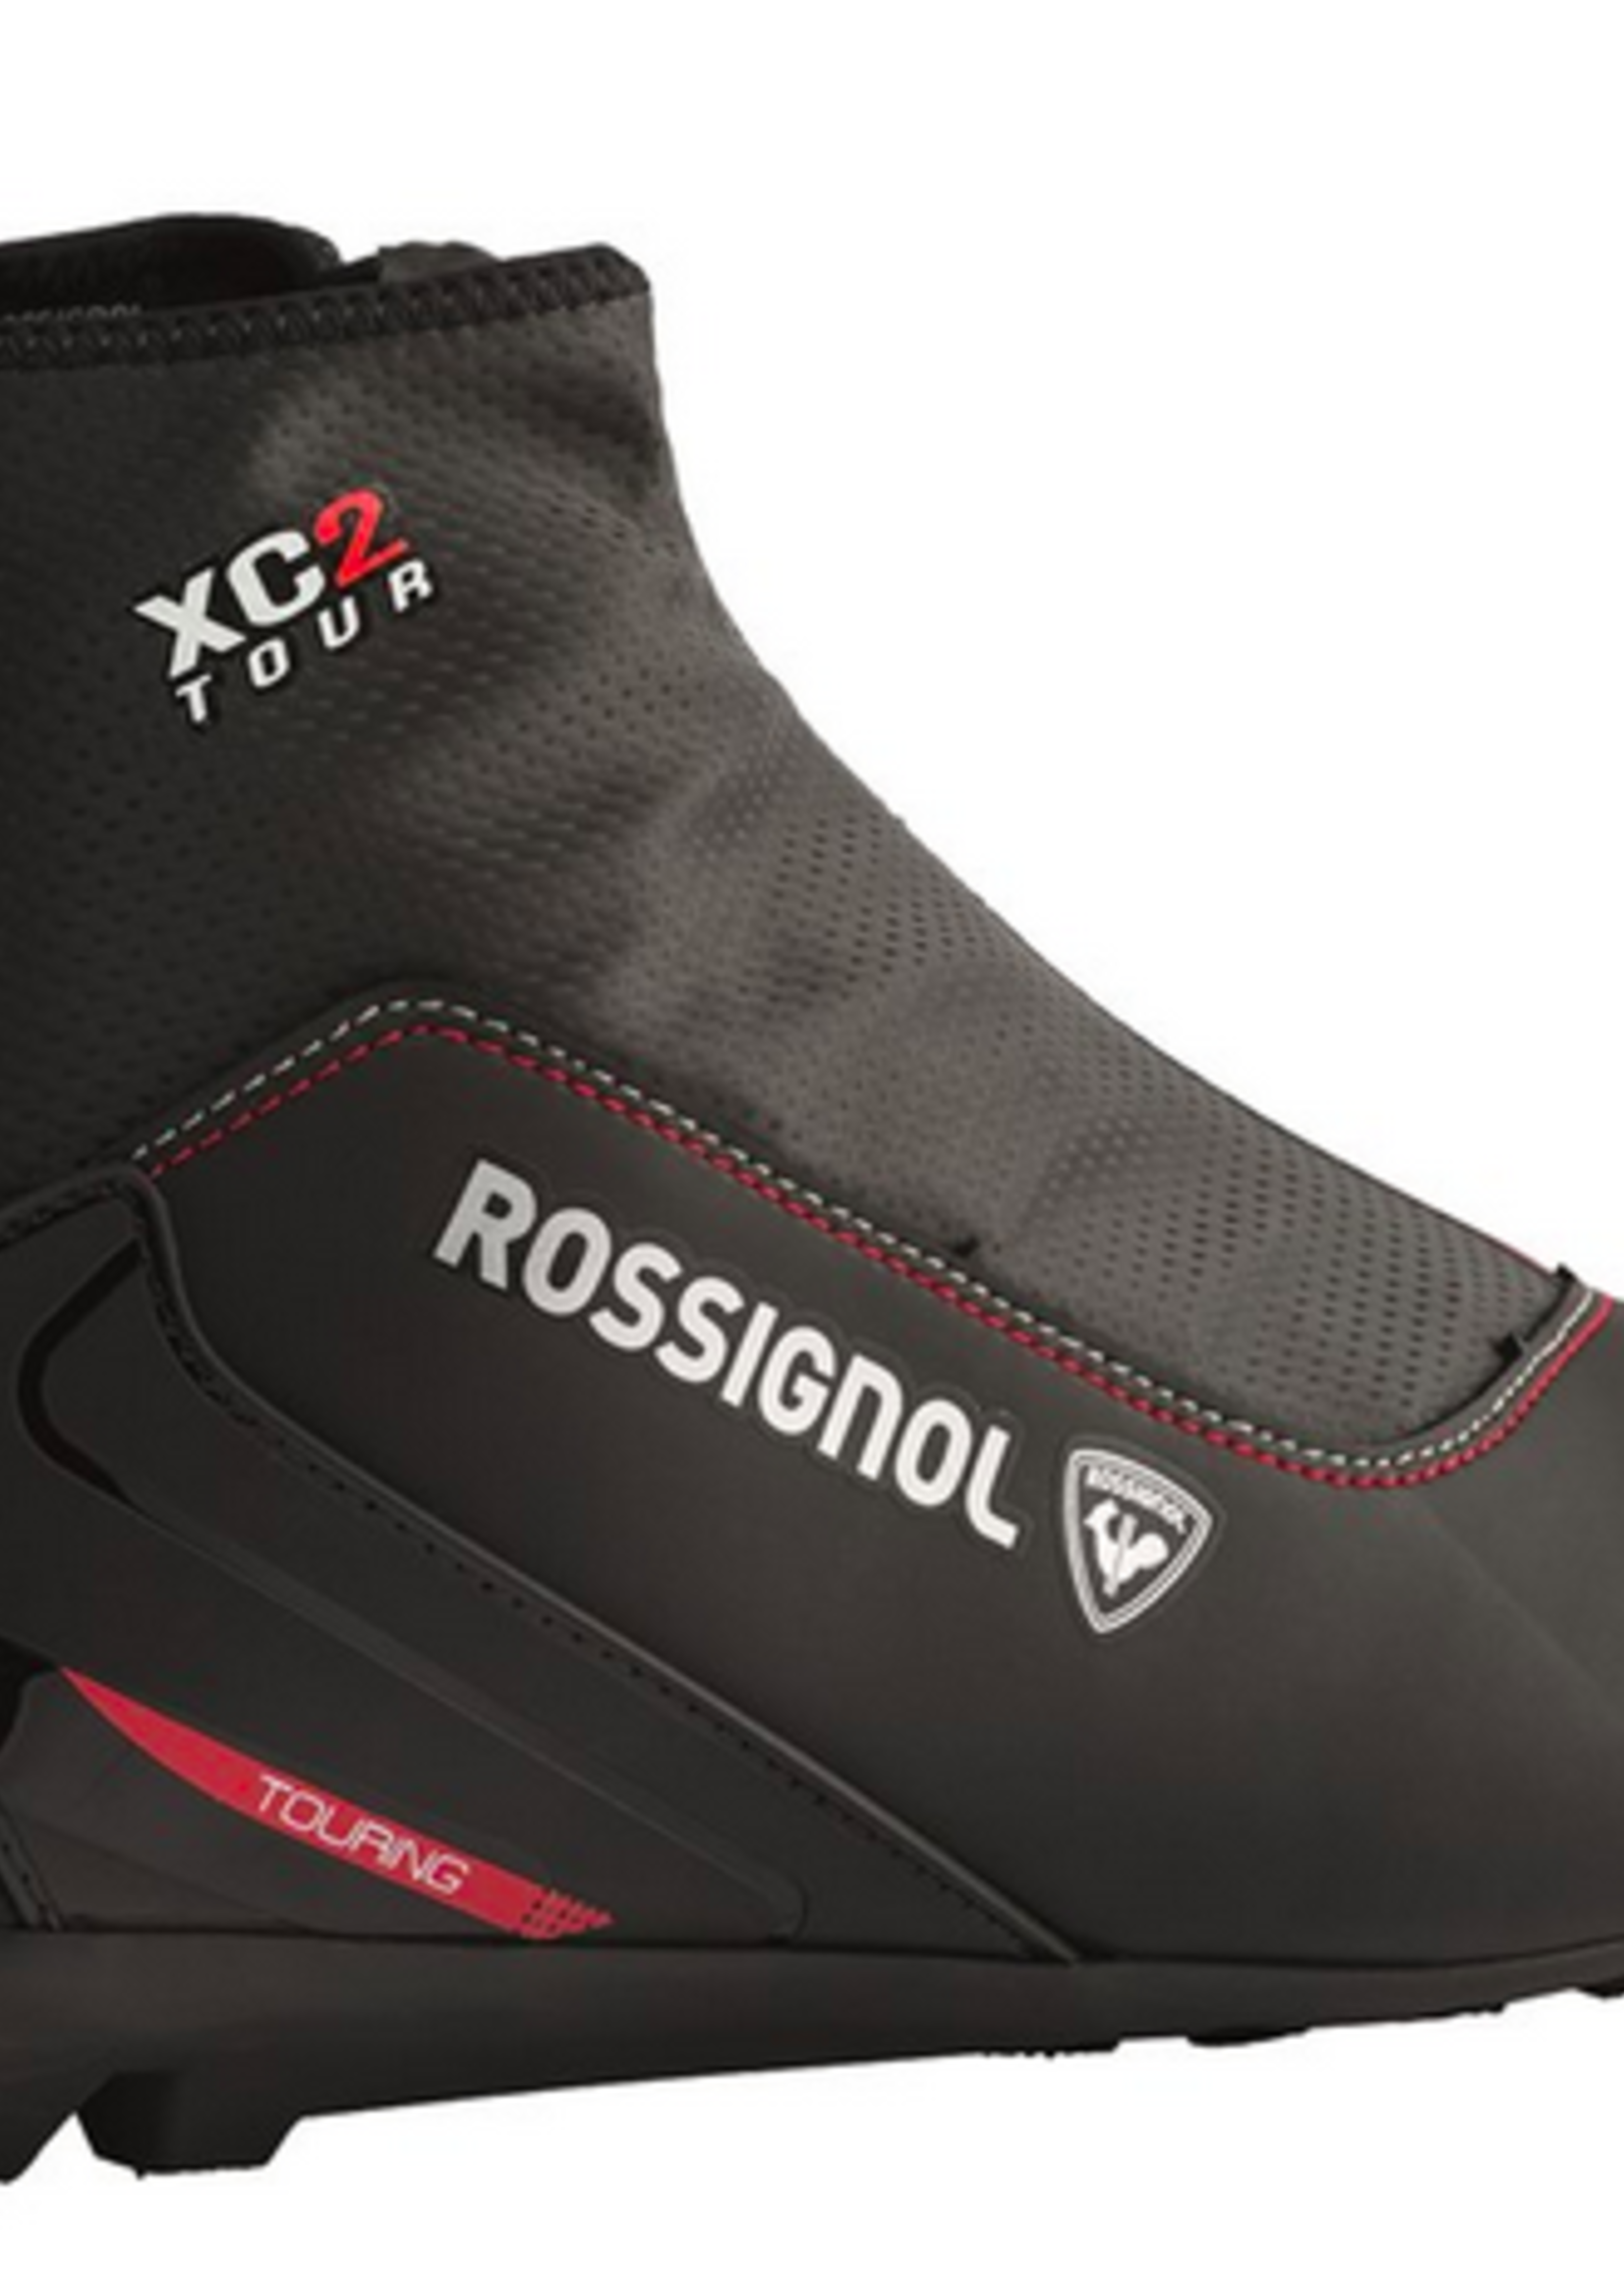 Rossignol Rossignol XC-2 Nordic Boot